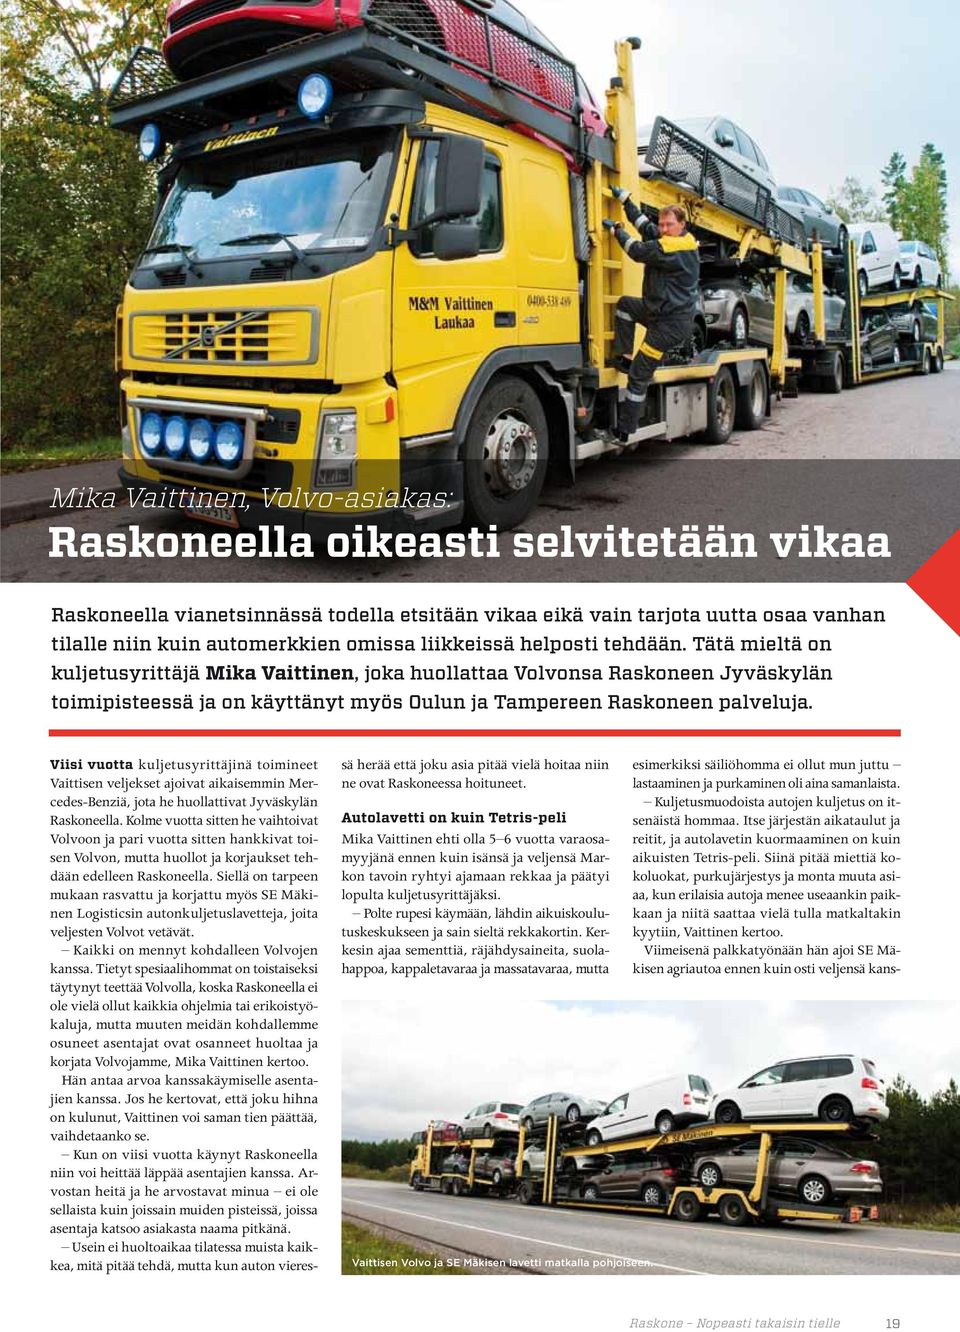 Viisi vuotta kuljetusyrittäjinä toimineet Vaittisen veljekset ajoivat aikaisemmin Mercedes-Benziä, jota he huollattivat Jyväskylän Raskoneella.